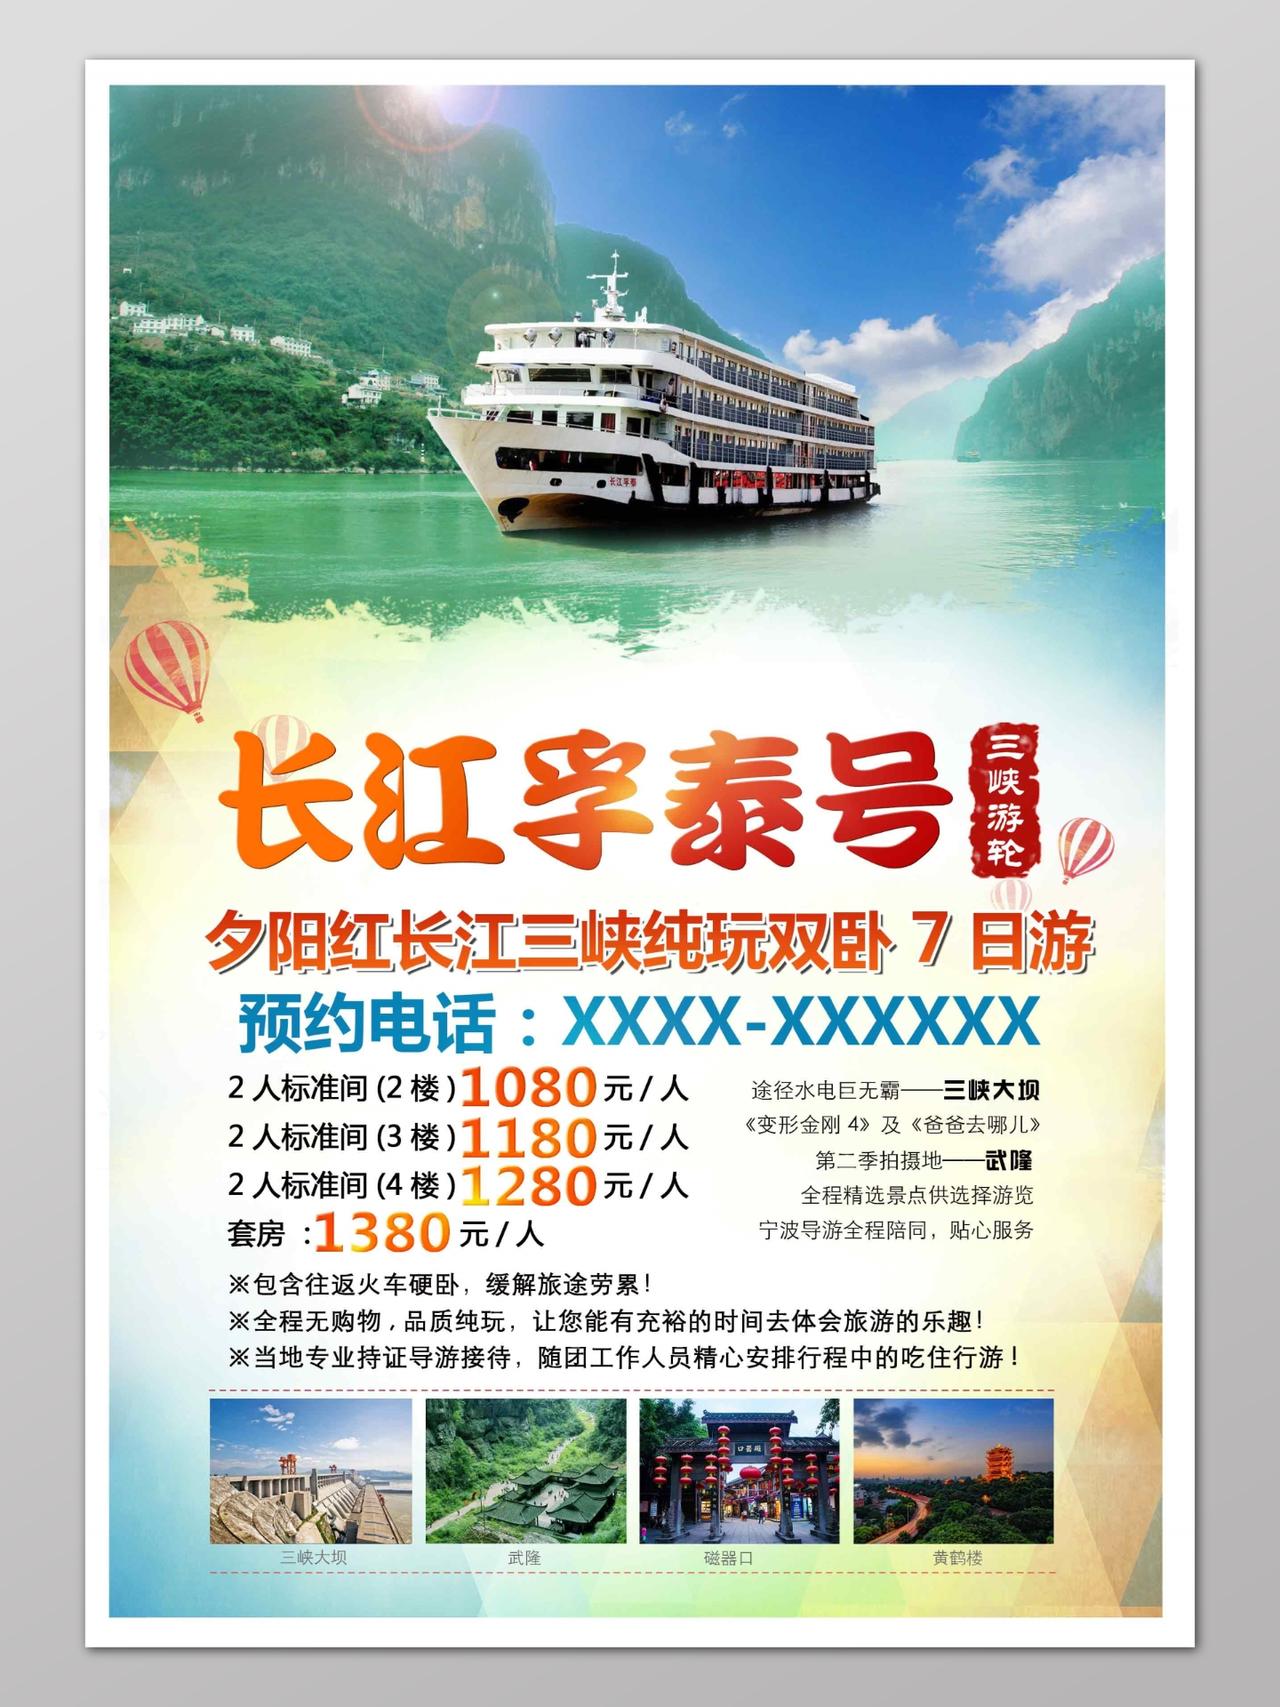 游轮旅游长江三峡促销宣传单